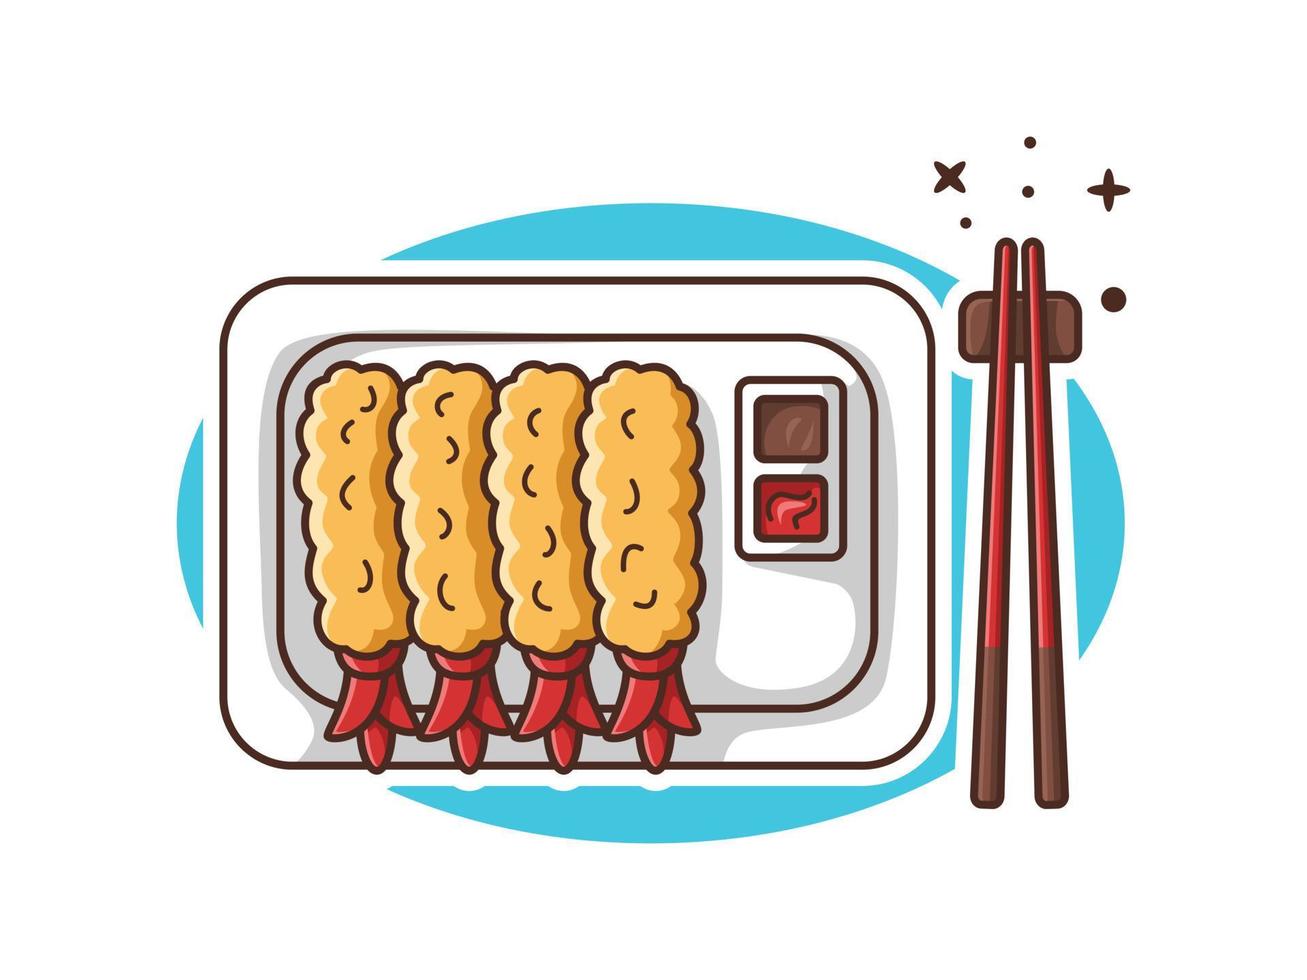 camarones fritos con salsa de soja y tomate en un vector de dibujos animados de ilustración de plato aislado. ilustración de comida de mar. ilustración de dibujos animados de tempura